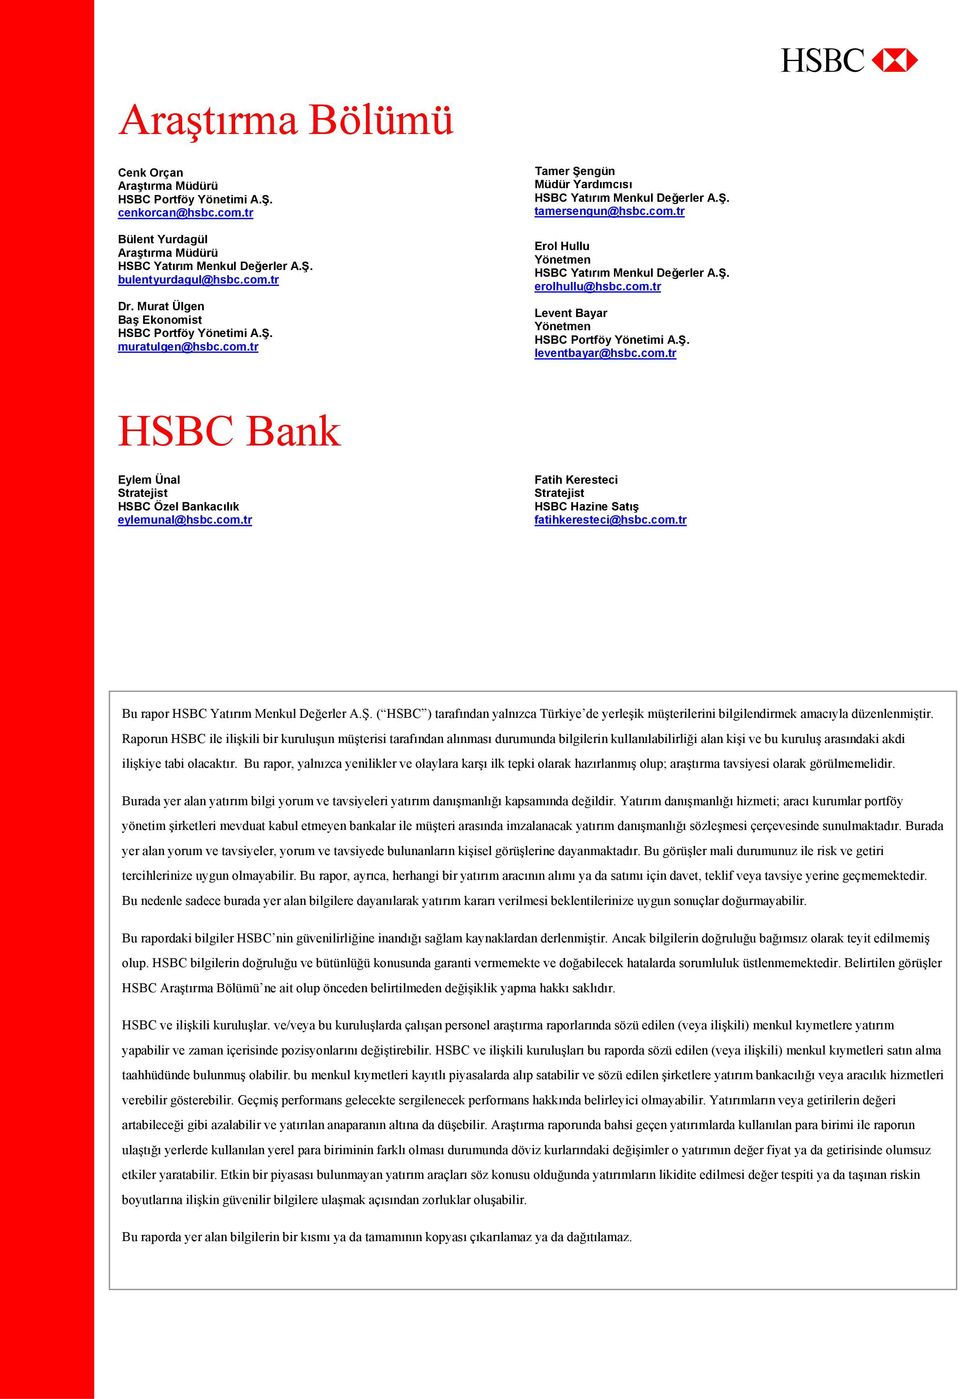 Ş. erolhullu@hsbc.com.tr Levent Bayar Yönetmen HSBC Portföy Yönetimi A.Ş. leventbayar@hsbc.com.tr HSBC Bank Eylem Ünal Stratejist HSBC Özel Bankacılık eylemunal@hsbc.com.tr Fatih Keresteci Stratejist HSBC Hazine Satış fatihkeresteci@hsbc.